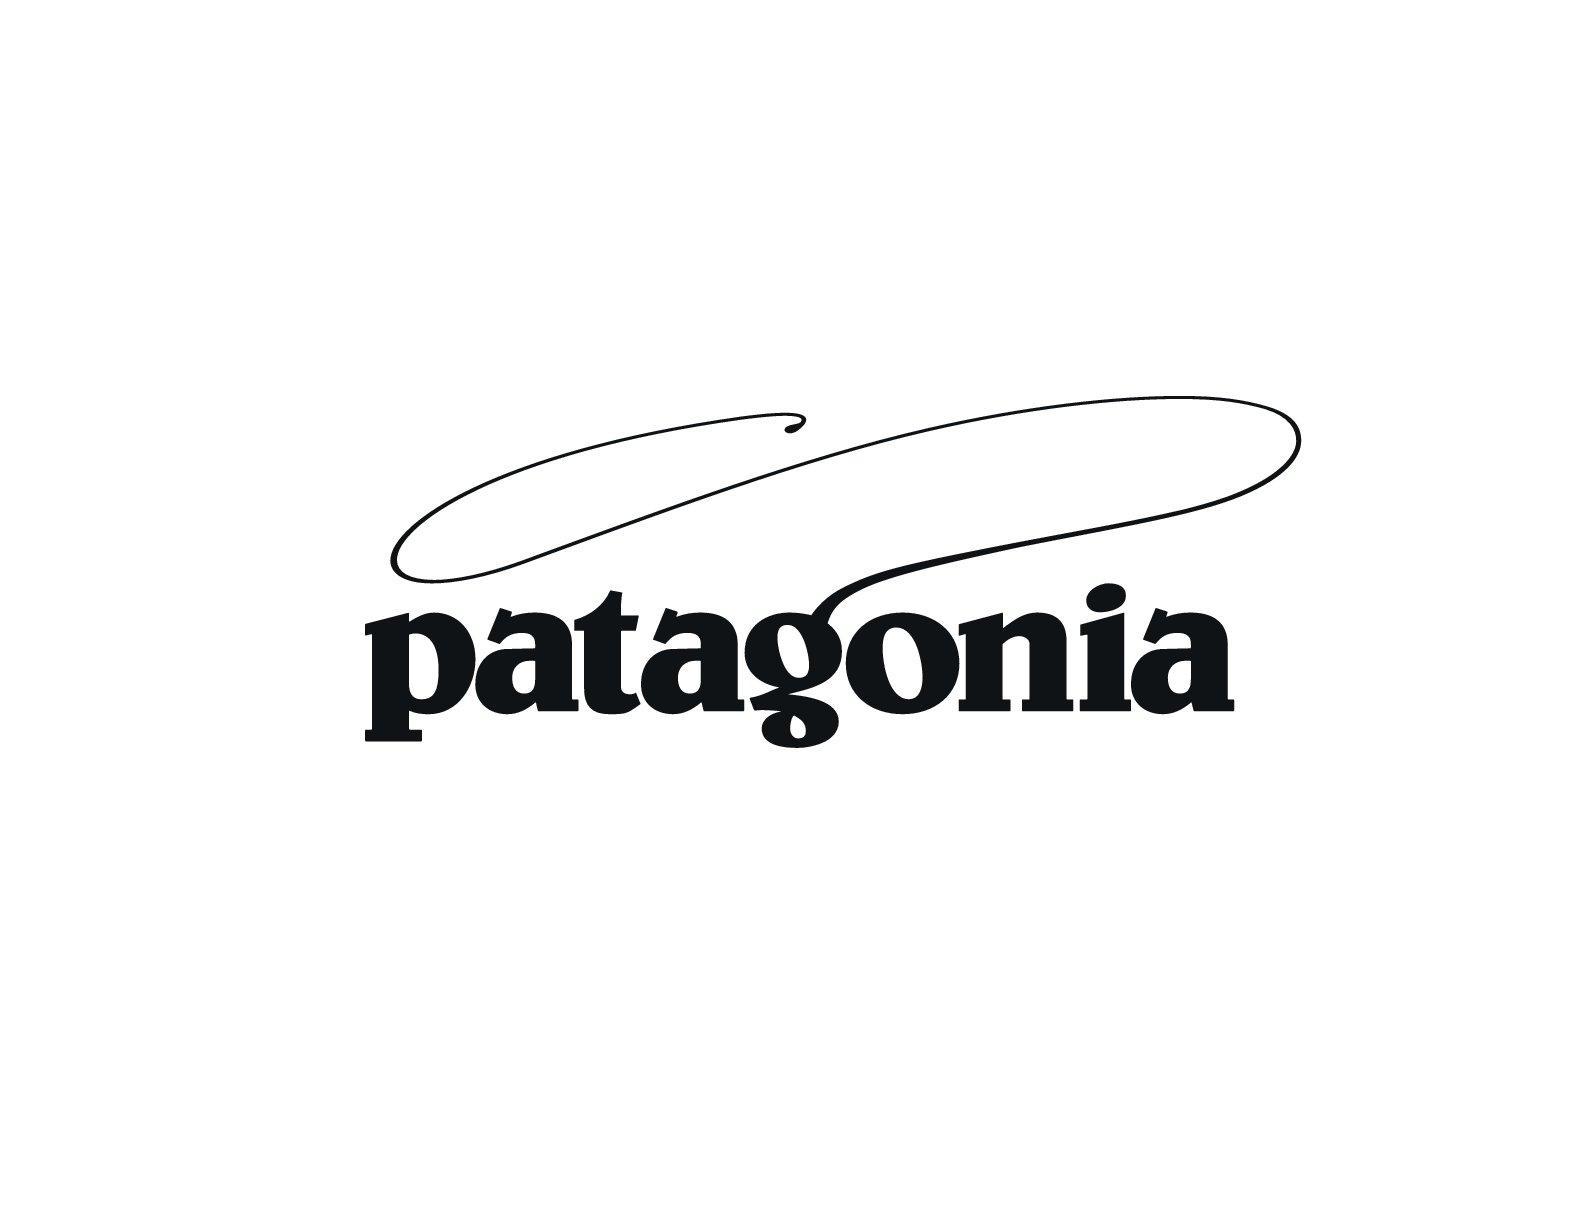 Patagonia Fish Logo - Patagonia Waders and Packs in stock 1864